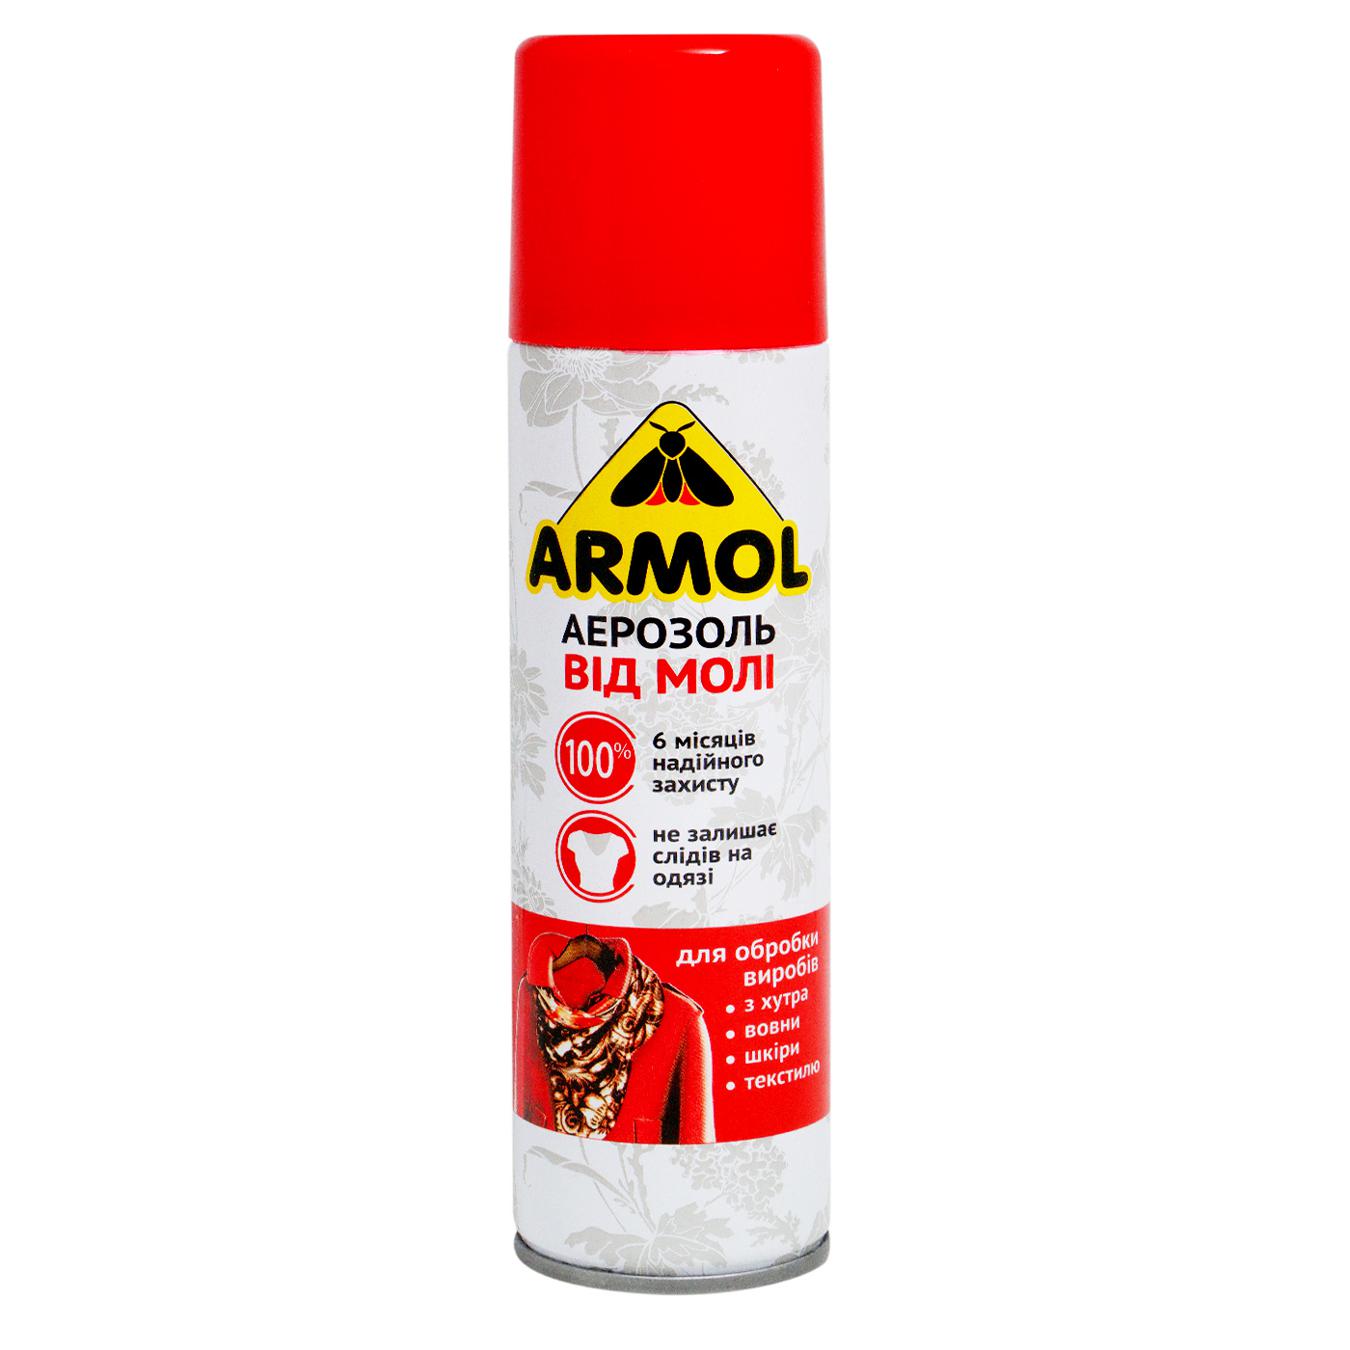 Armol spray against moths 150 ml